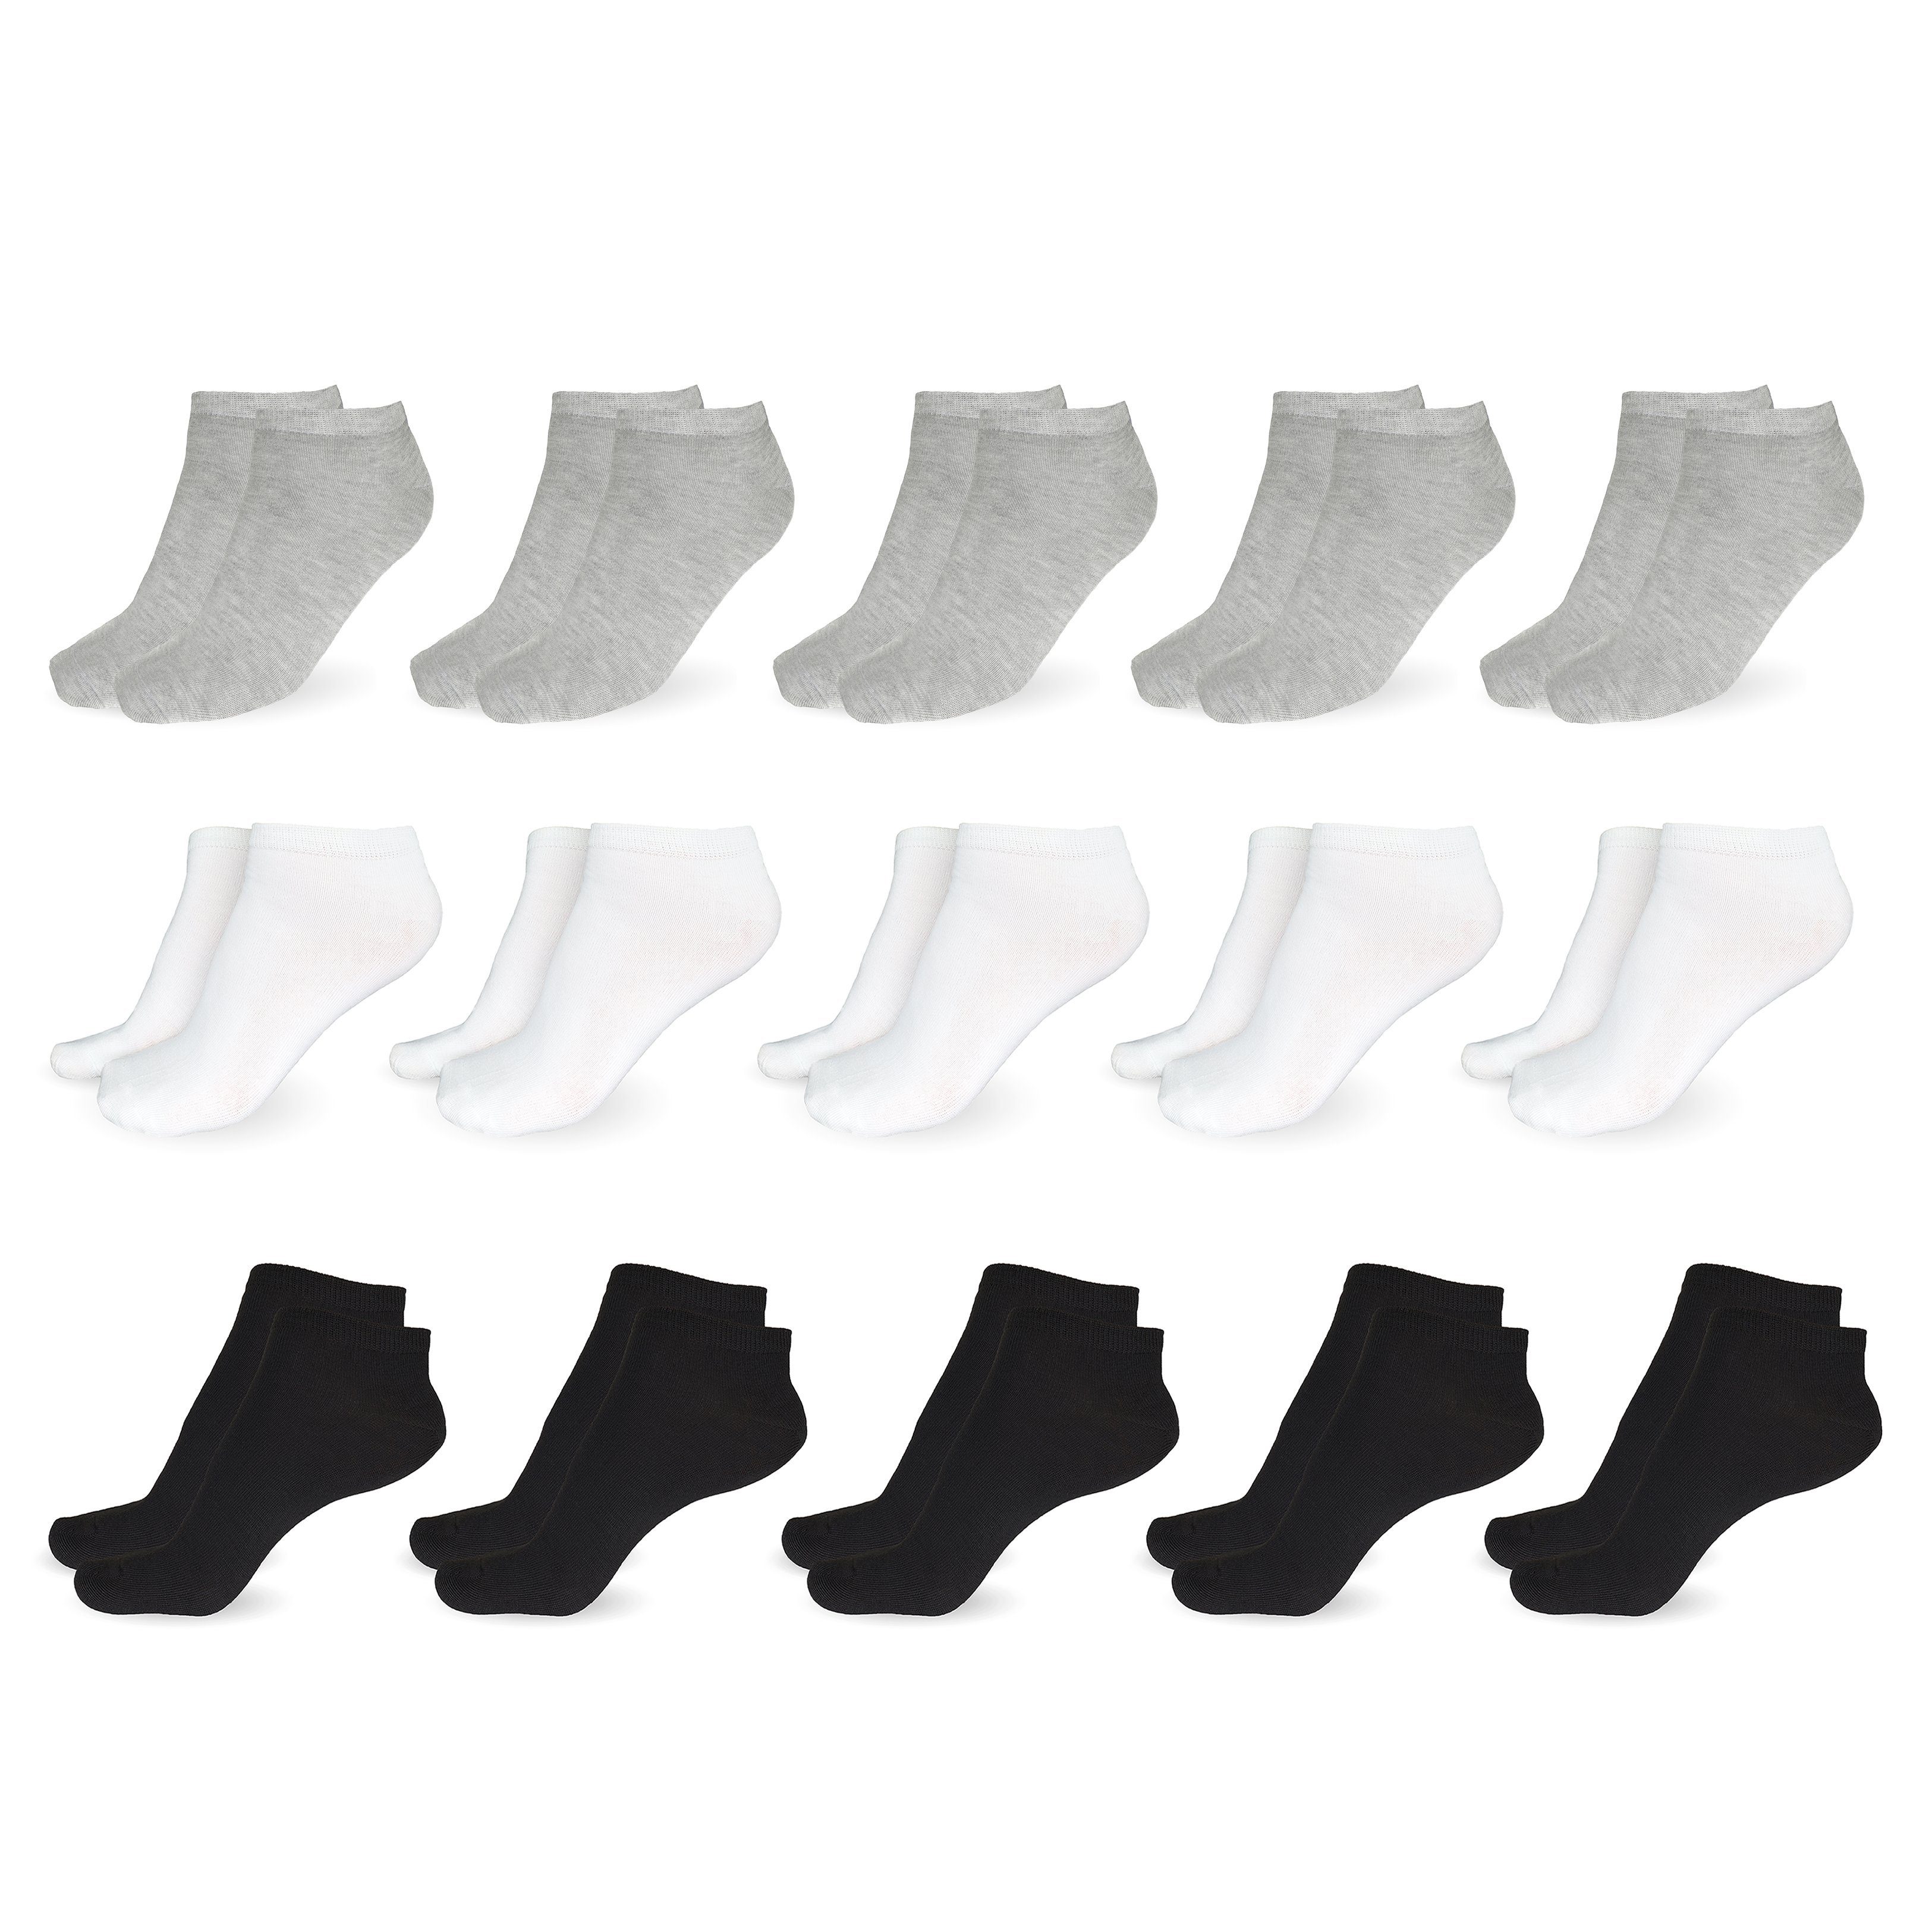 SO.I Freizeitsocken Sneaker + atmungsaktive aus 10x Herren (Größen Socken Unisex + & 35-46, Socken Paar) Schwarz Baumwolle Grau Damen Weiß 5-20 10x 10x